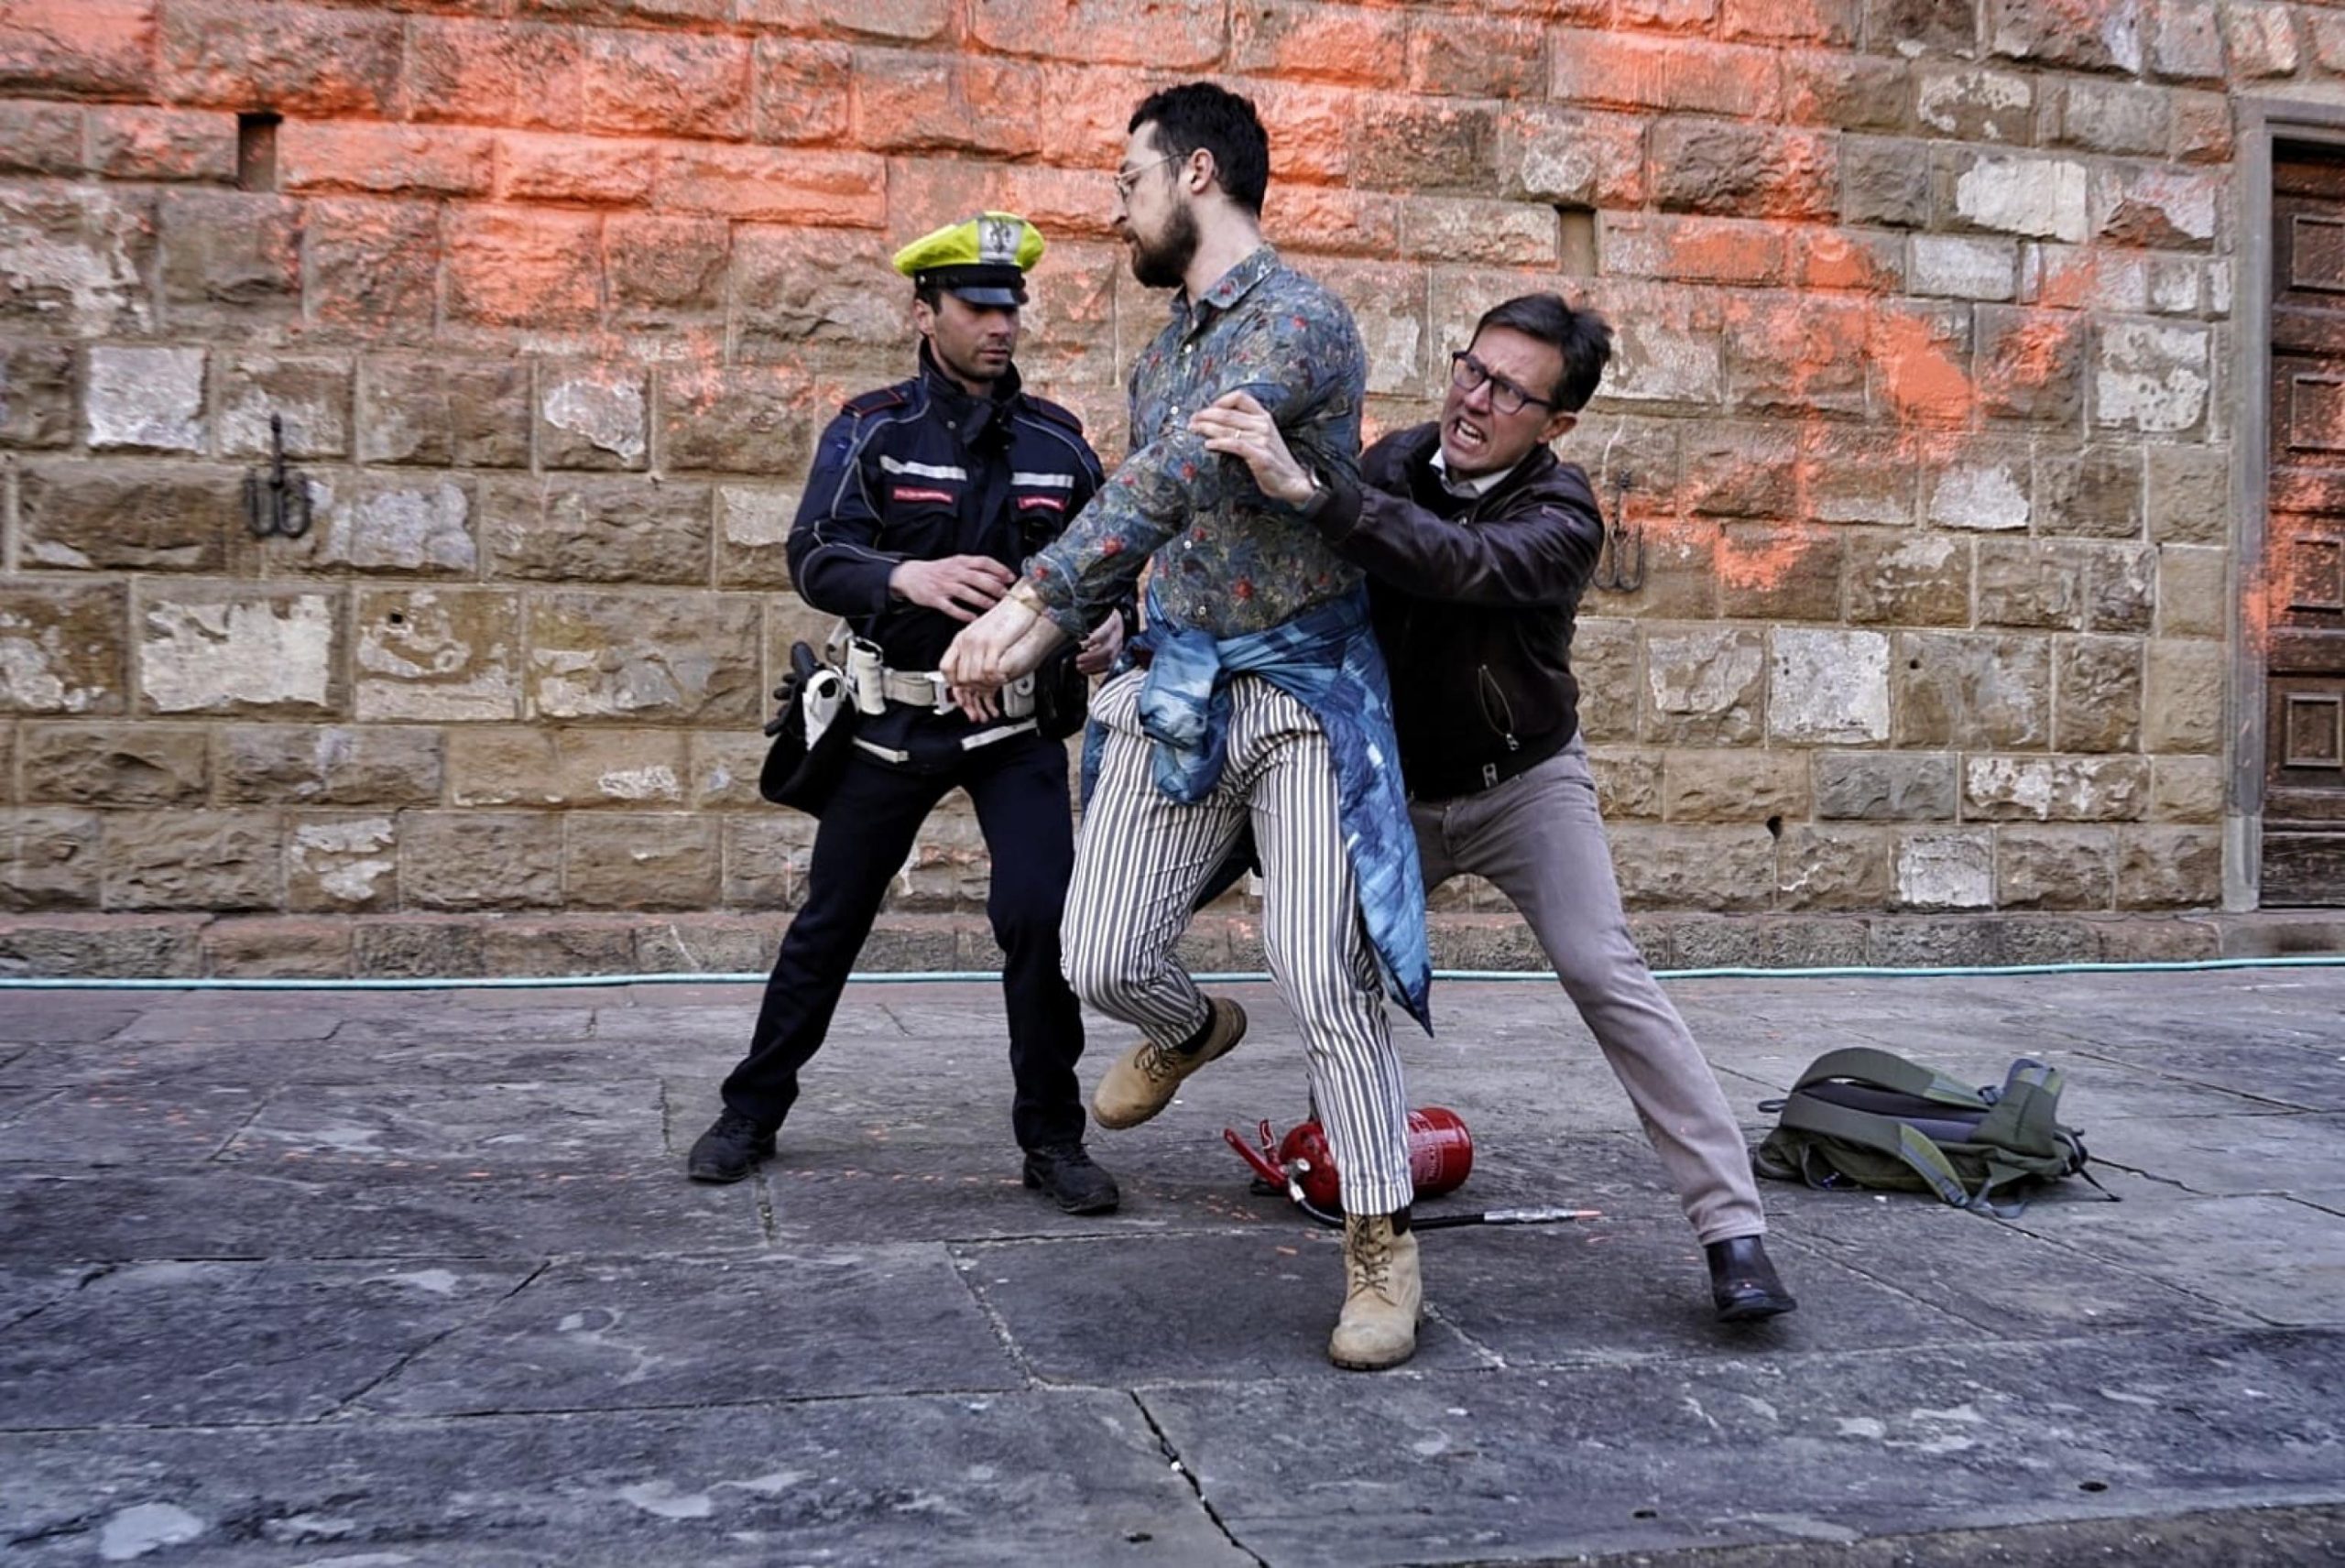 意大利古迹遭环保人士泼漆 市长亲自拦阻怒批“野蛮人”